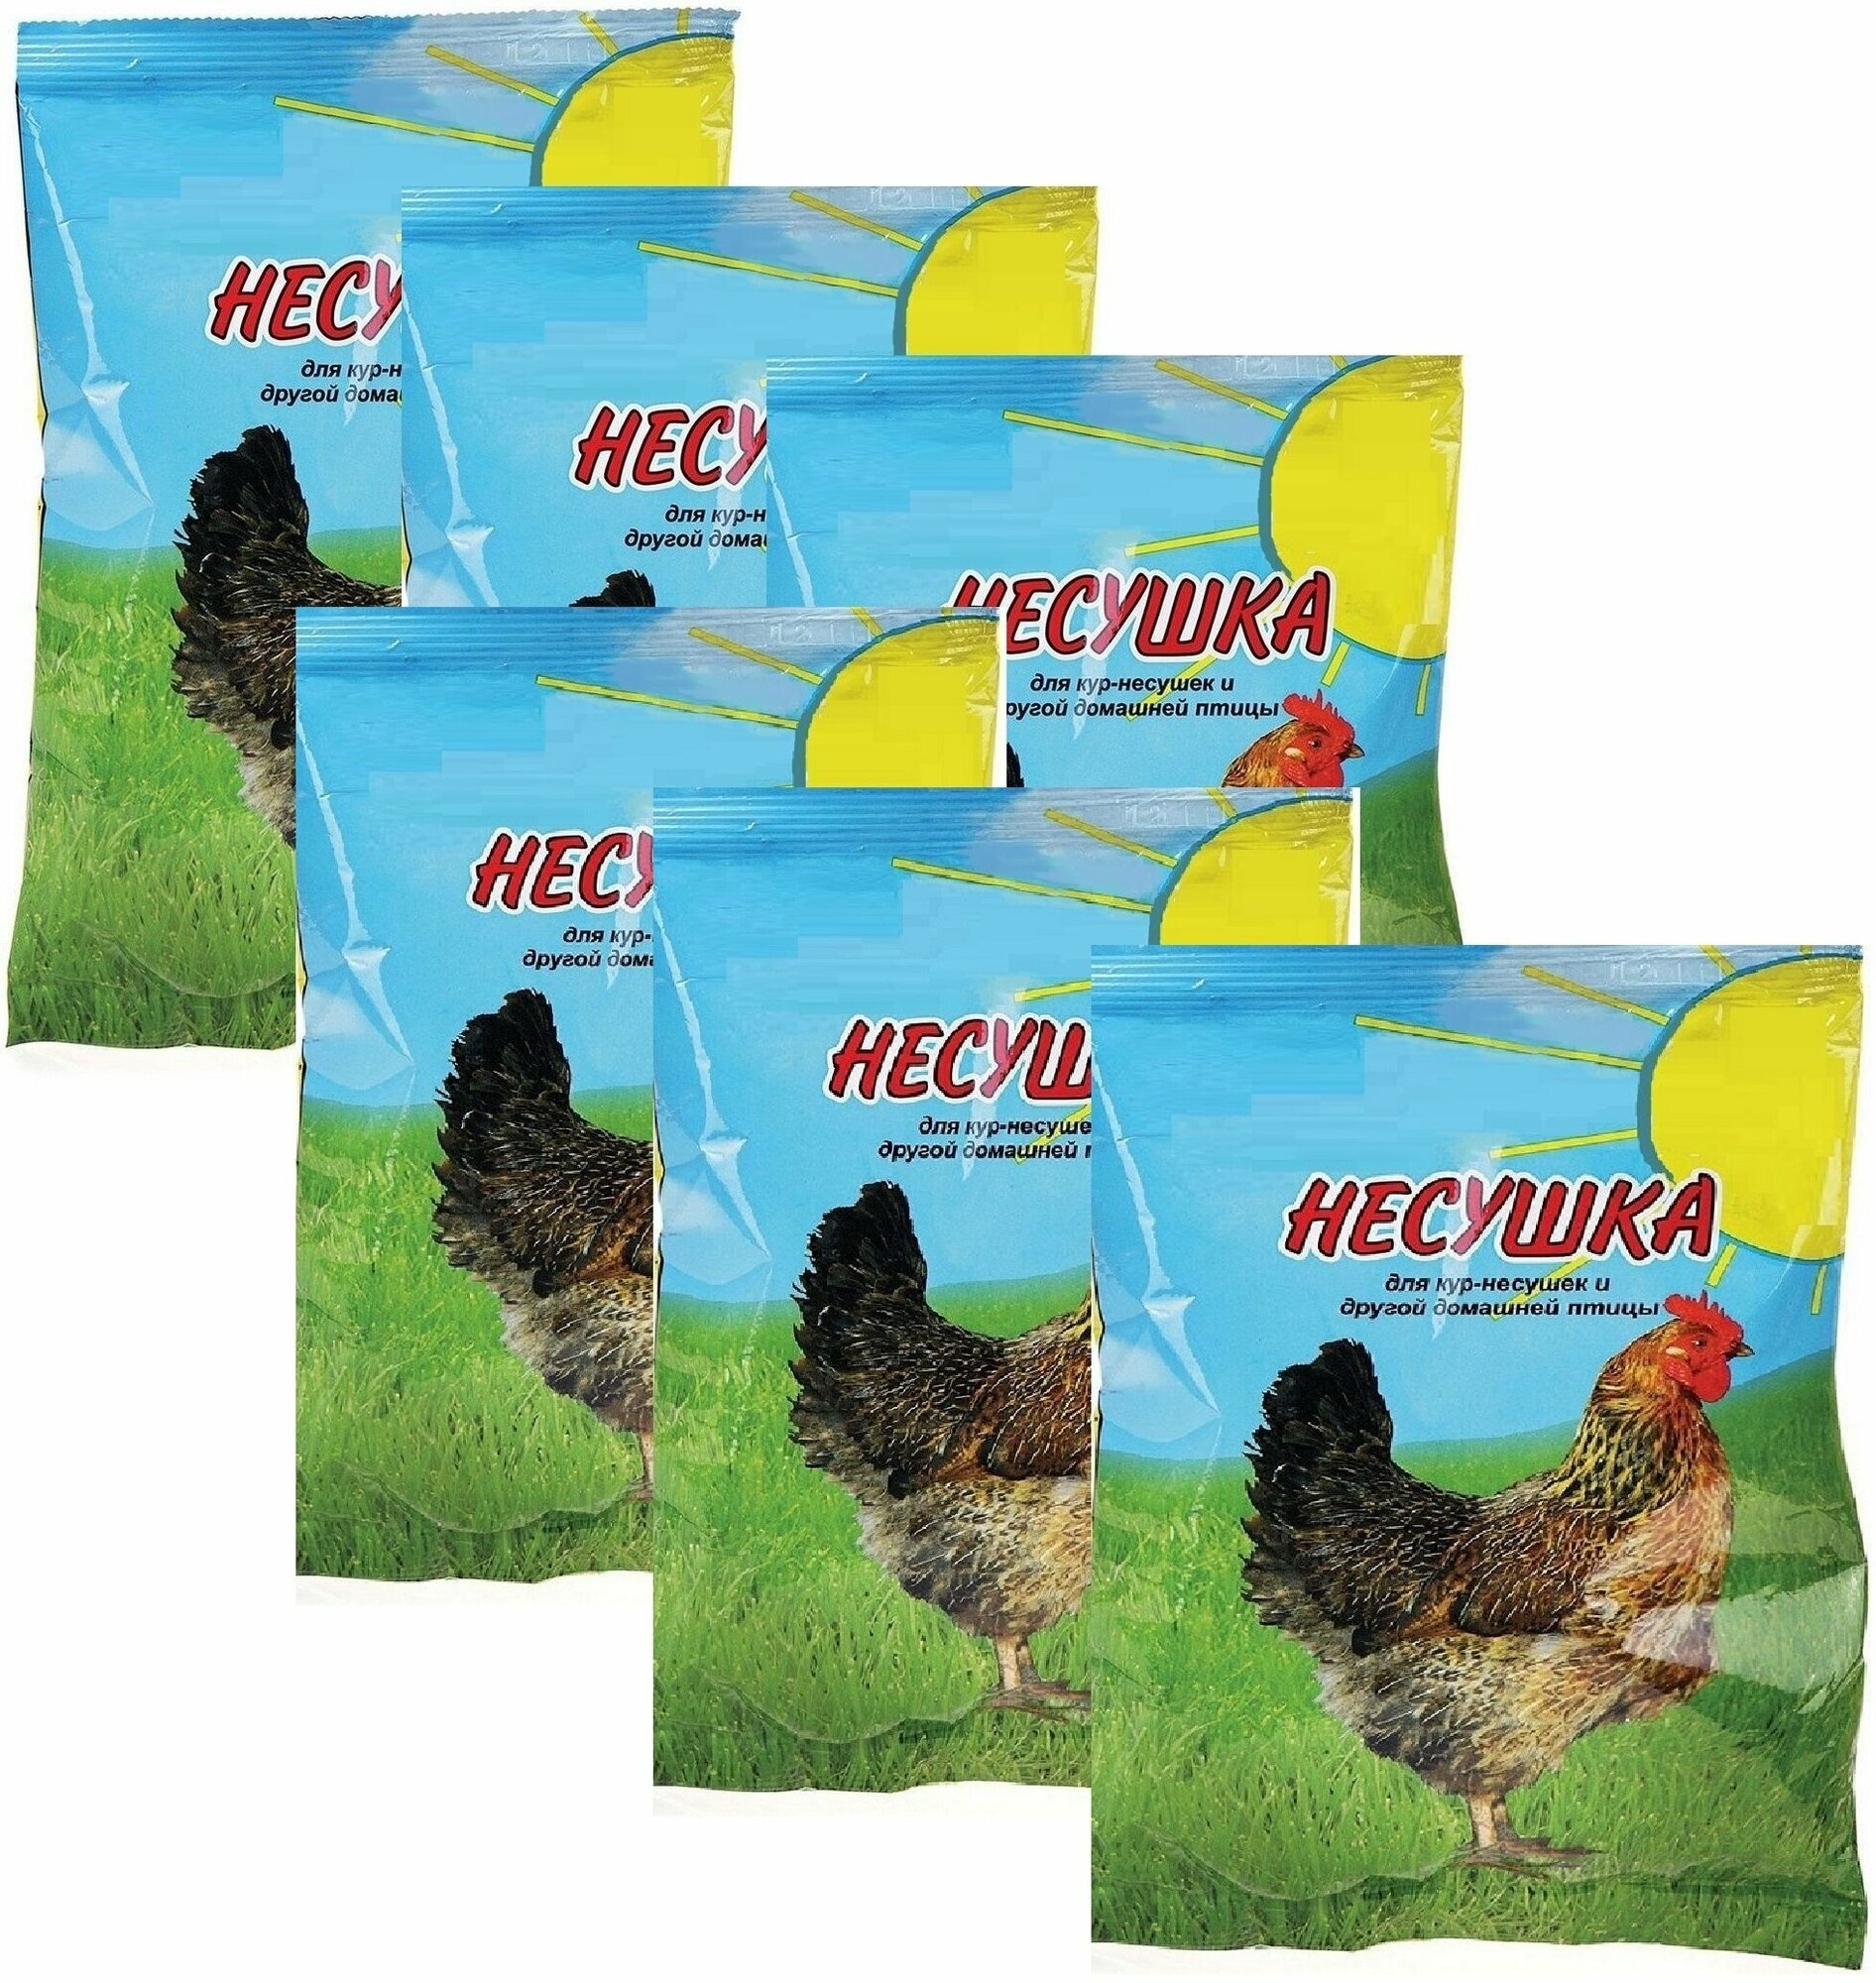 Витаминно-минеральная смесь для кур "Несушка", 6 пакетов по 250г, 11 витаминов и 7 минералов, необходимых для здоровья и бодрости домашней птицы - фотография № 1